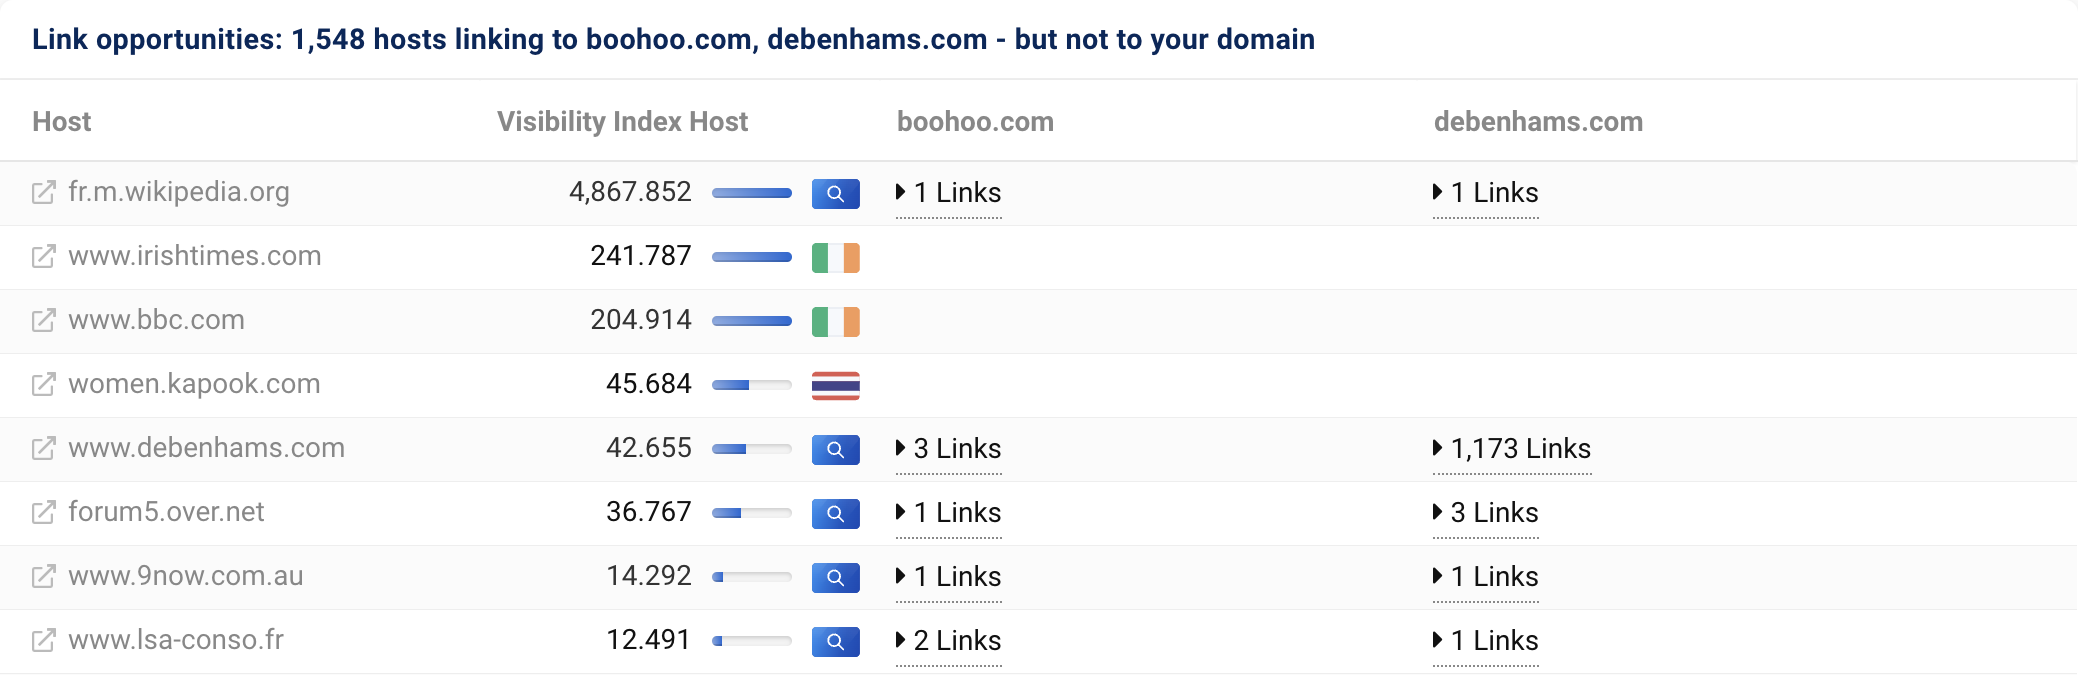 1.548 hosts enlazan a boohoo.com y debenhams.com, pero no a nuestro dominio asos.com.